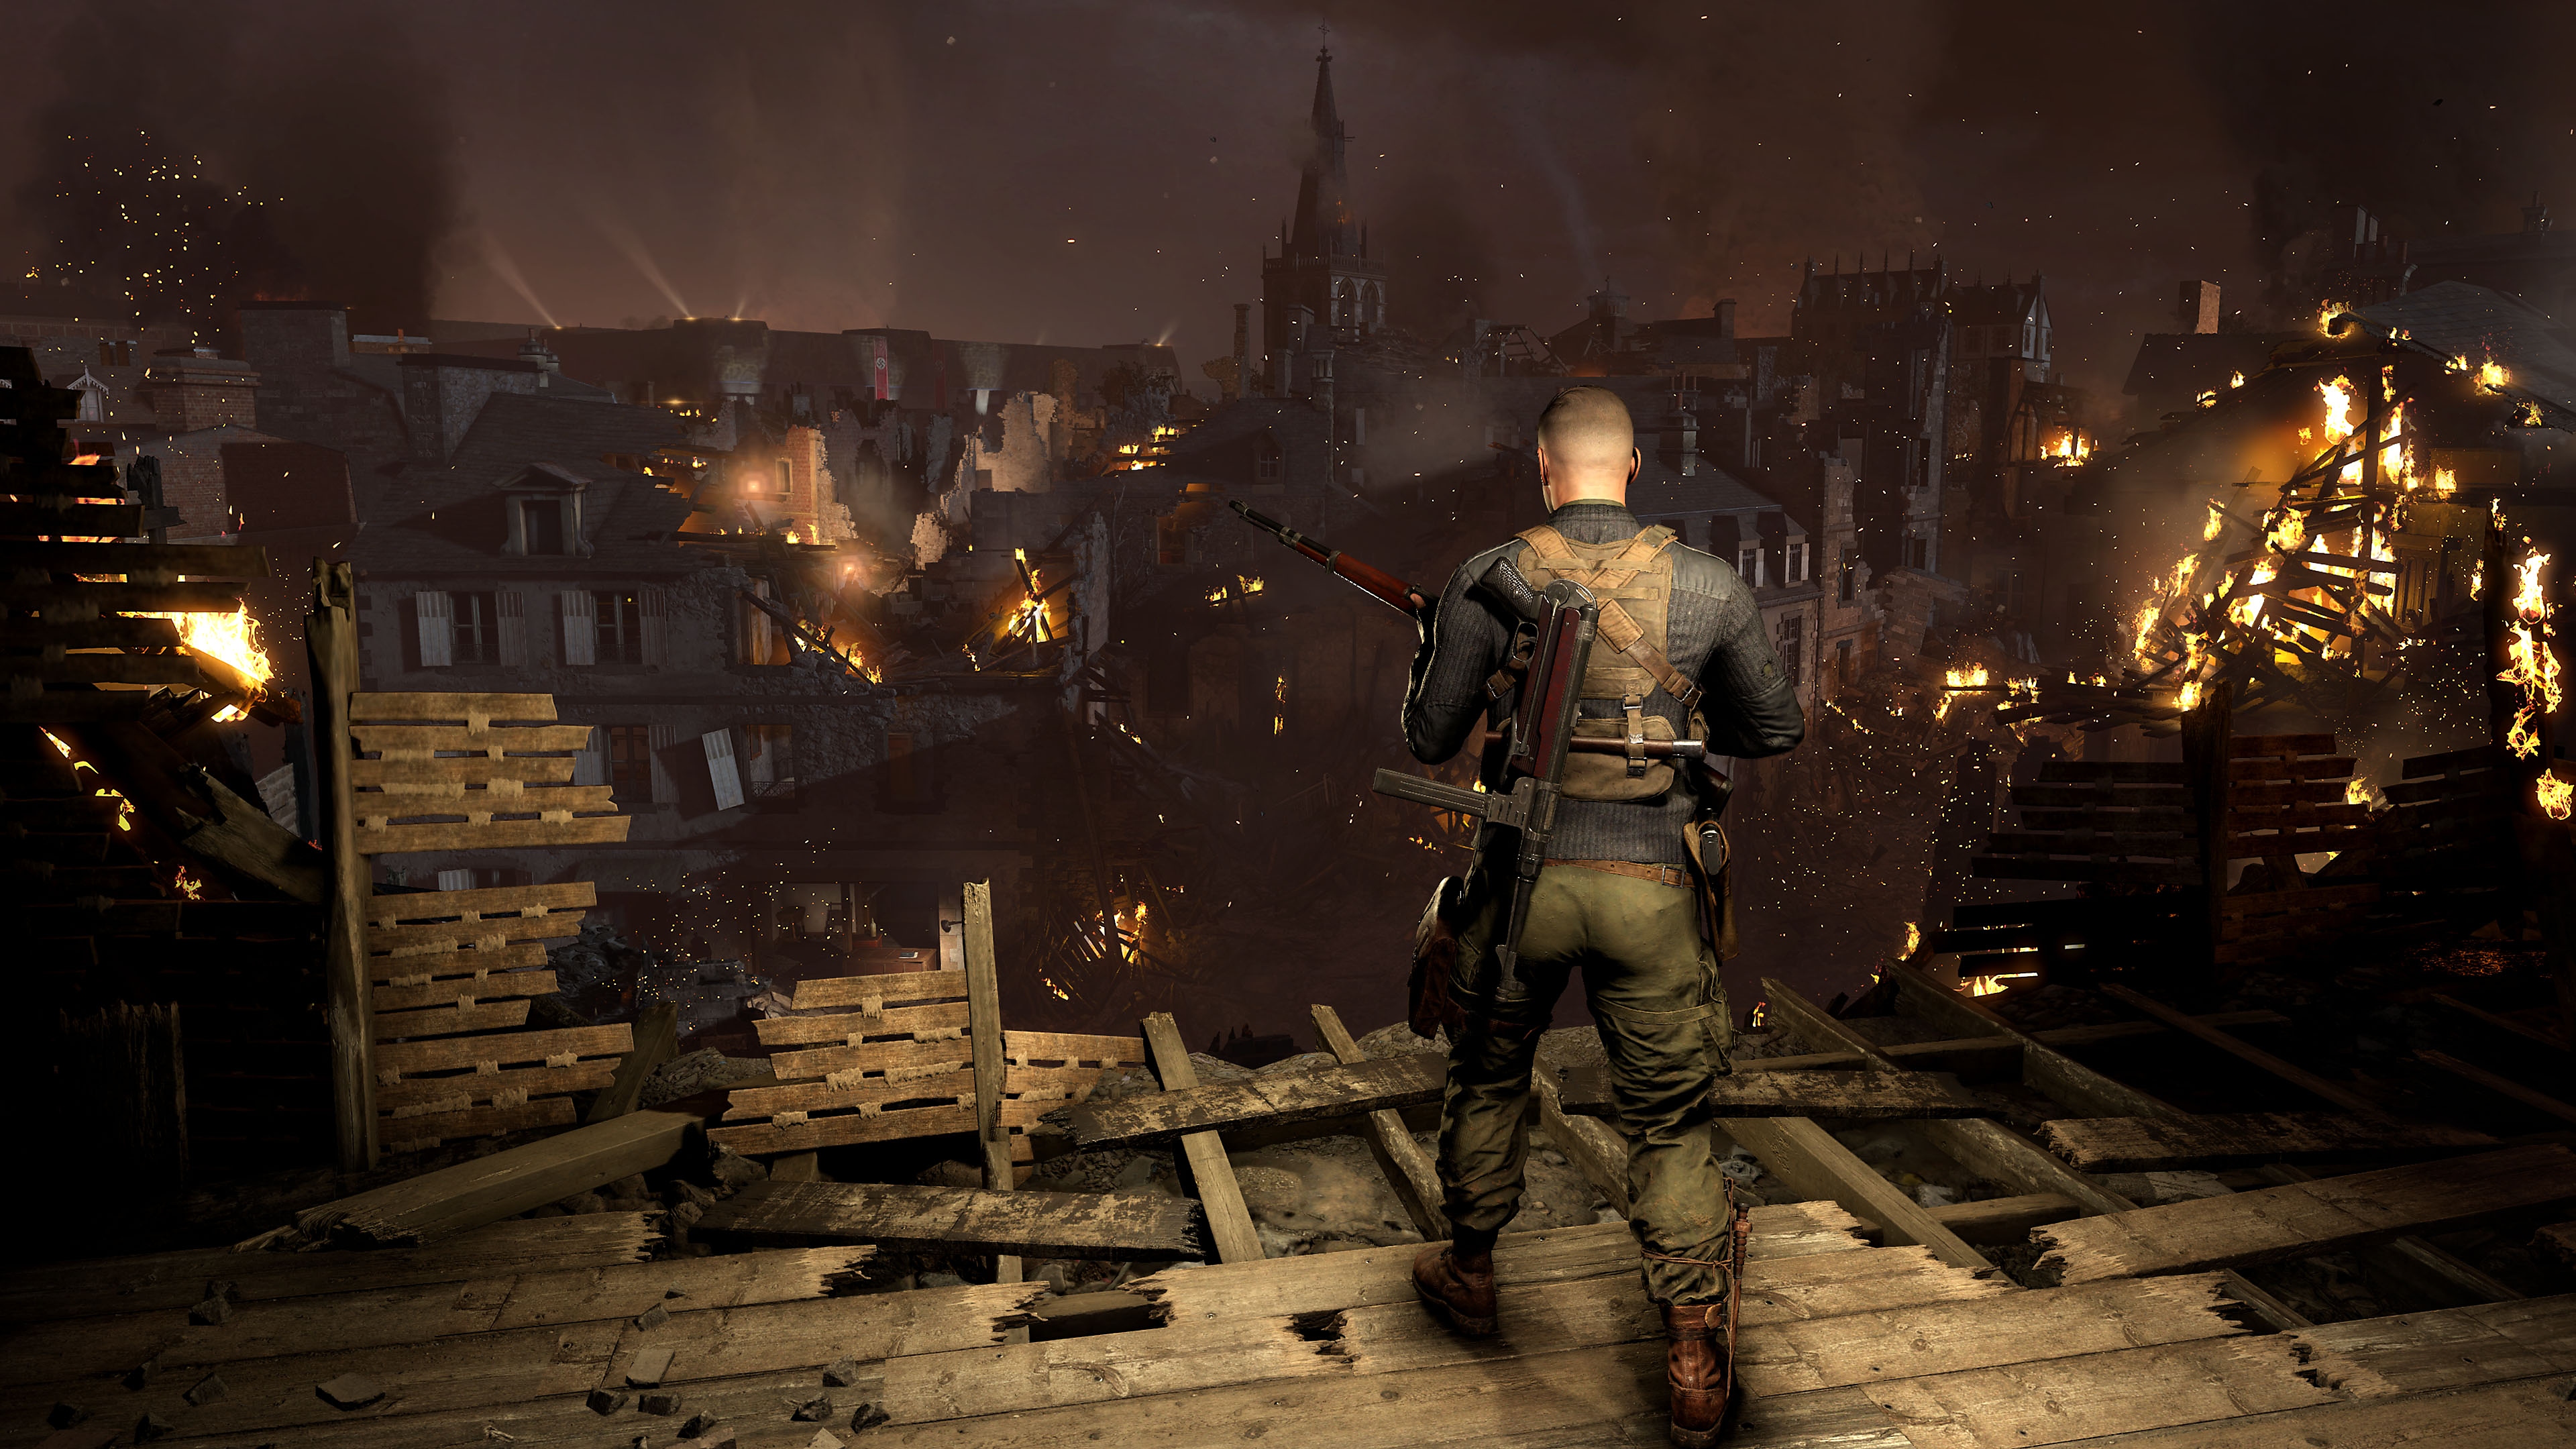 Capture d'écran de Sniper Elite 5 - personnage contemplant une ville où des bâtiments sont en feu